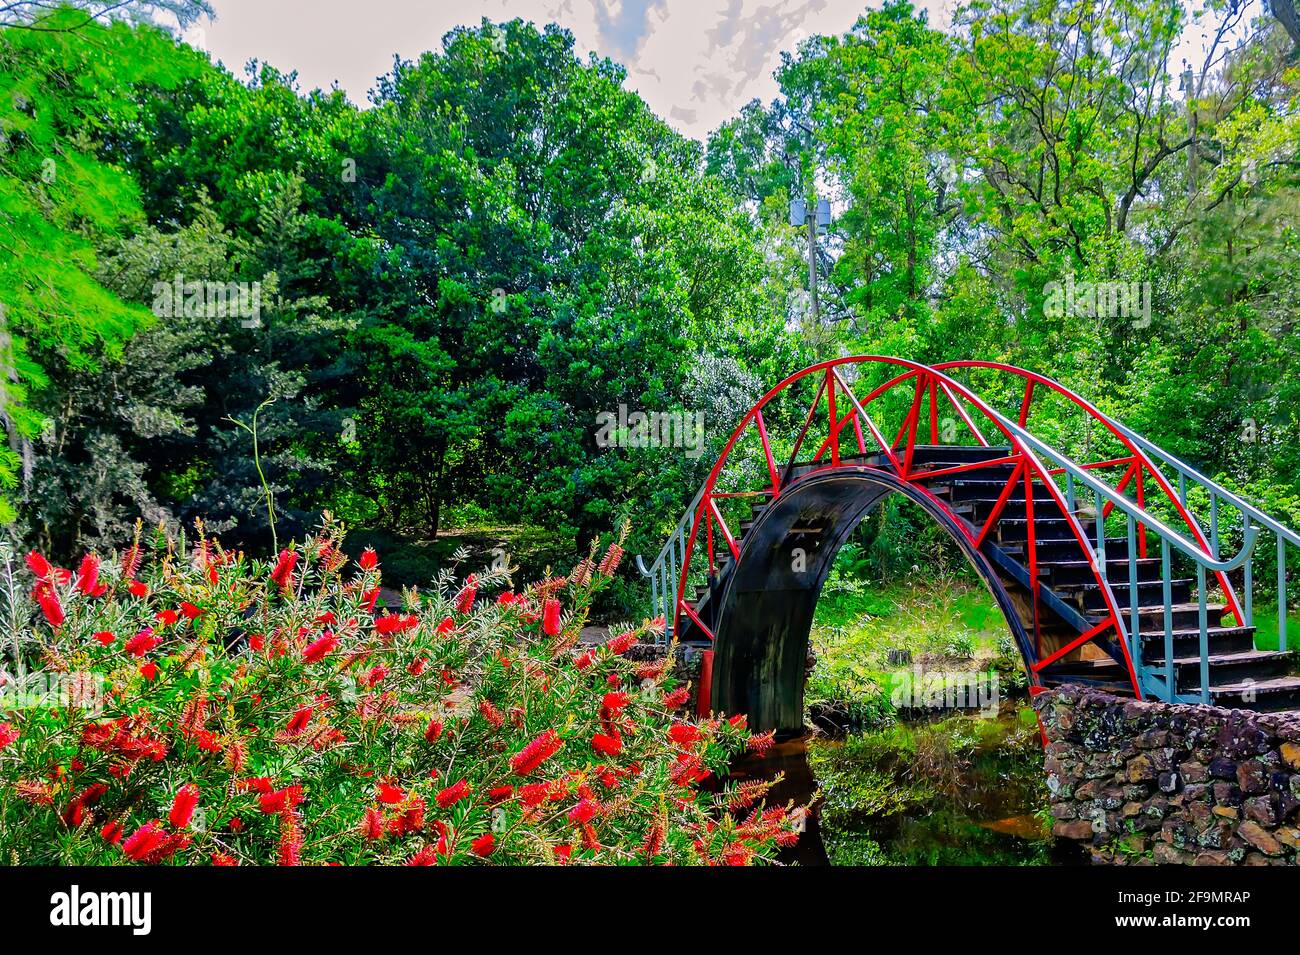 Le pont de lune, ou pont oriental, est photographié dans le jardin américano-asiatique des jardins de Bellingrath, le 19 avril 2021, à Theodore, Alabama. Banque D'Images